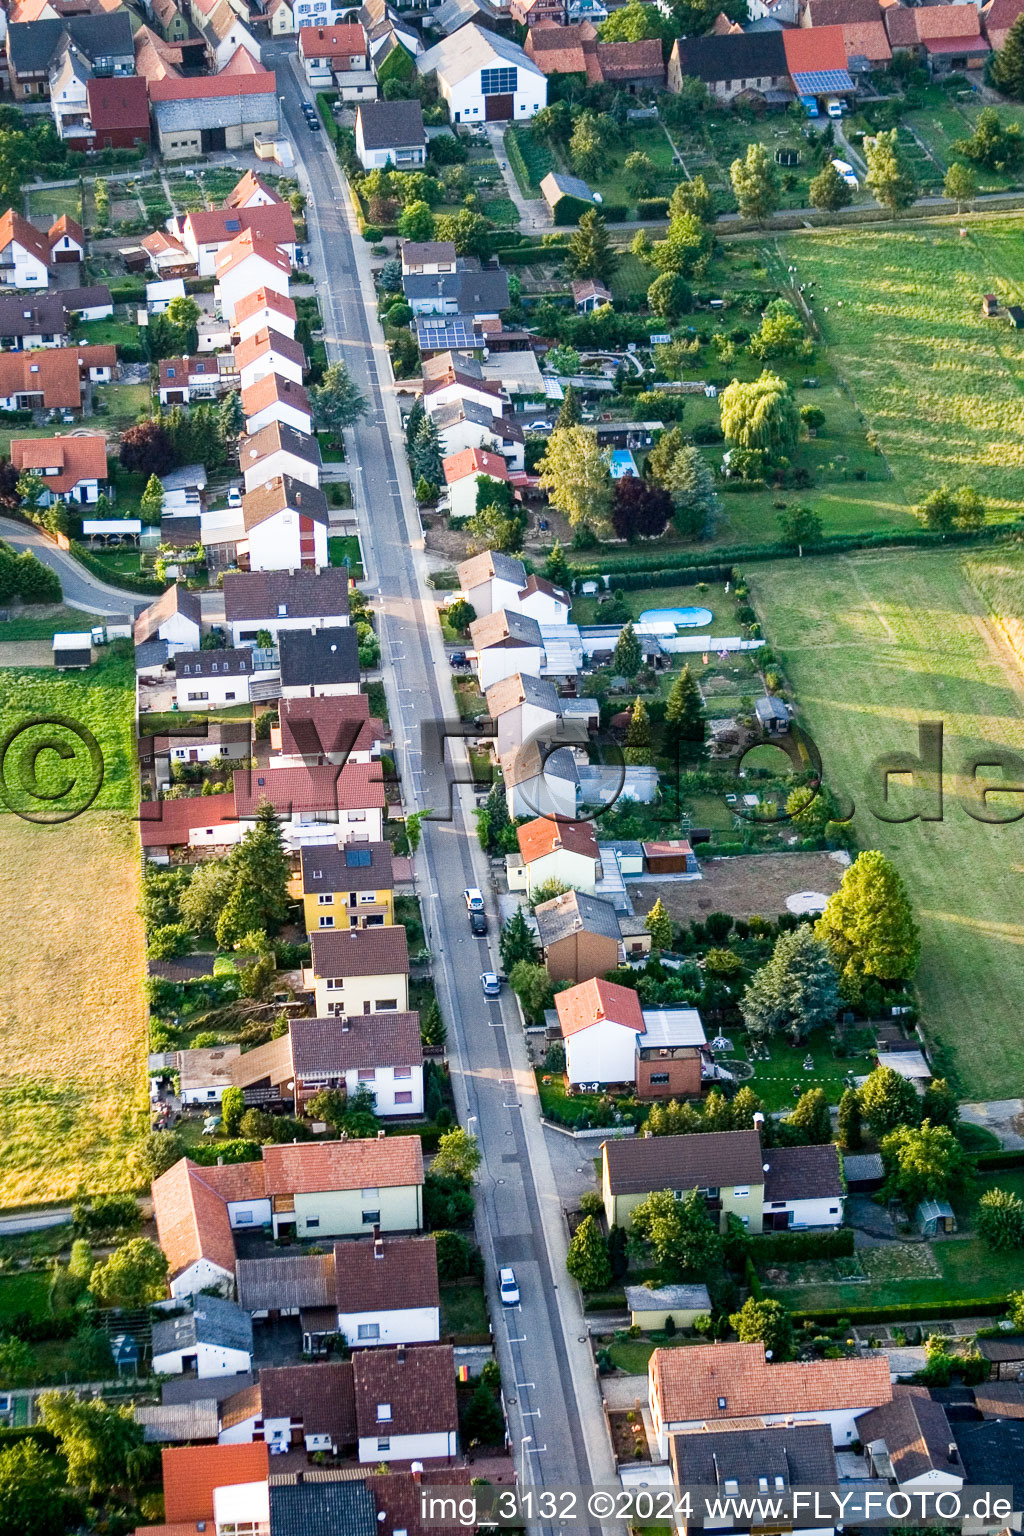 Vue aérienne de Wattstr à Freckenfeld dans le département Rhénanie-Palatinat, Allemagne